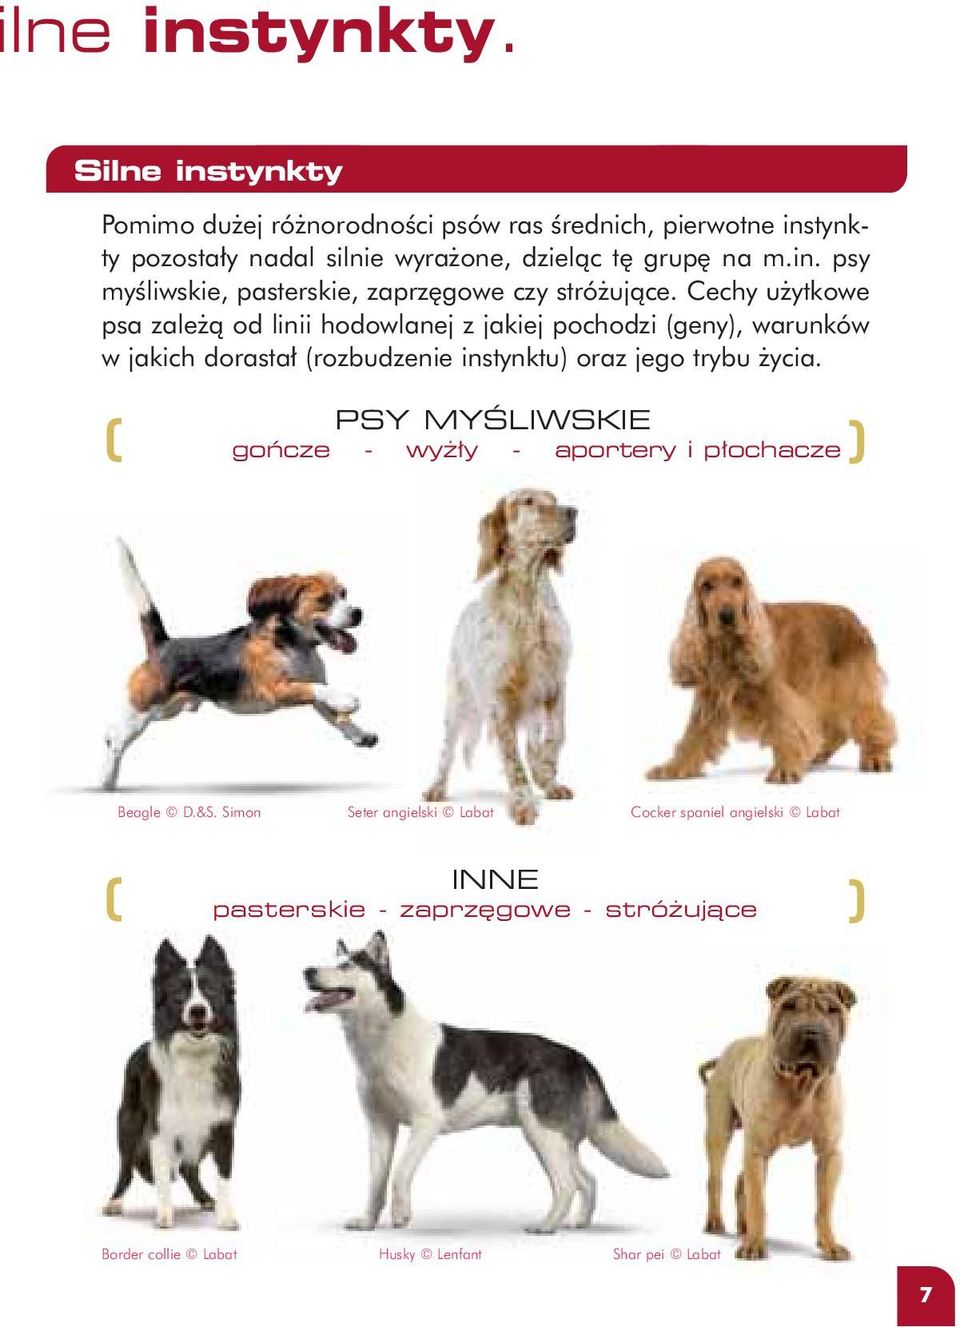 Cechy u ytkowe psa zale à od linii hodowlanej z jakiej pochodzi (geny), warunków w jakich dorasta (rozbudzenie instynktu) oraz jego trybu ycia.